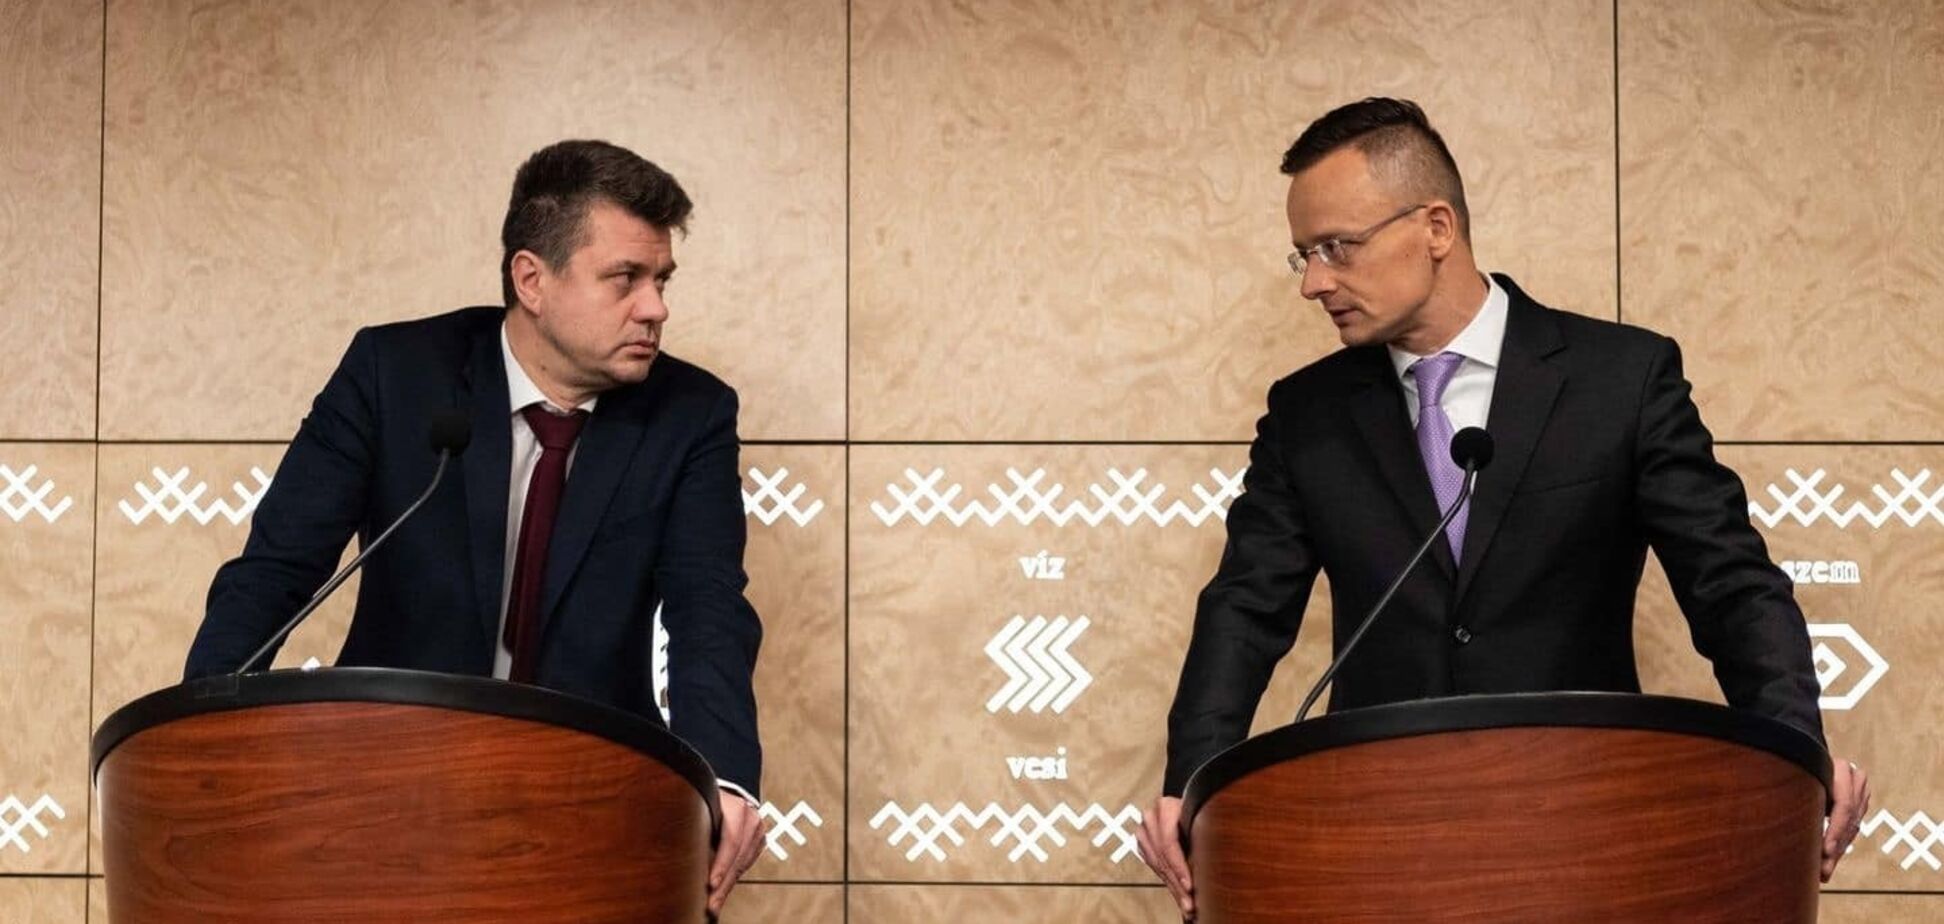 Сийярто заявил, что Венгрия не планирует ограничивать визы для россиян и против новых санкций в отношении РФ